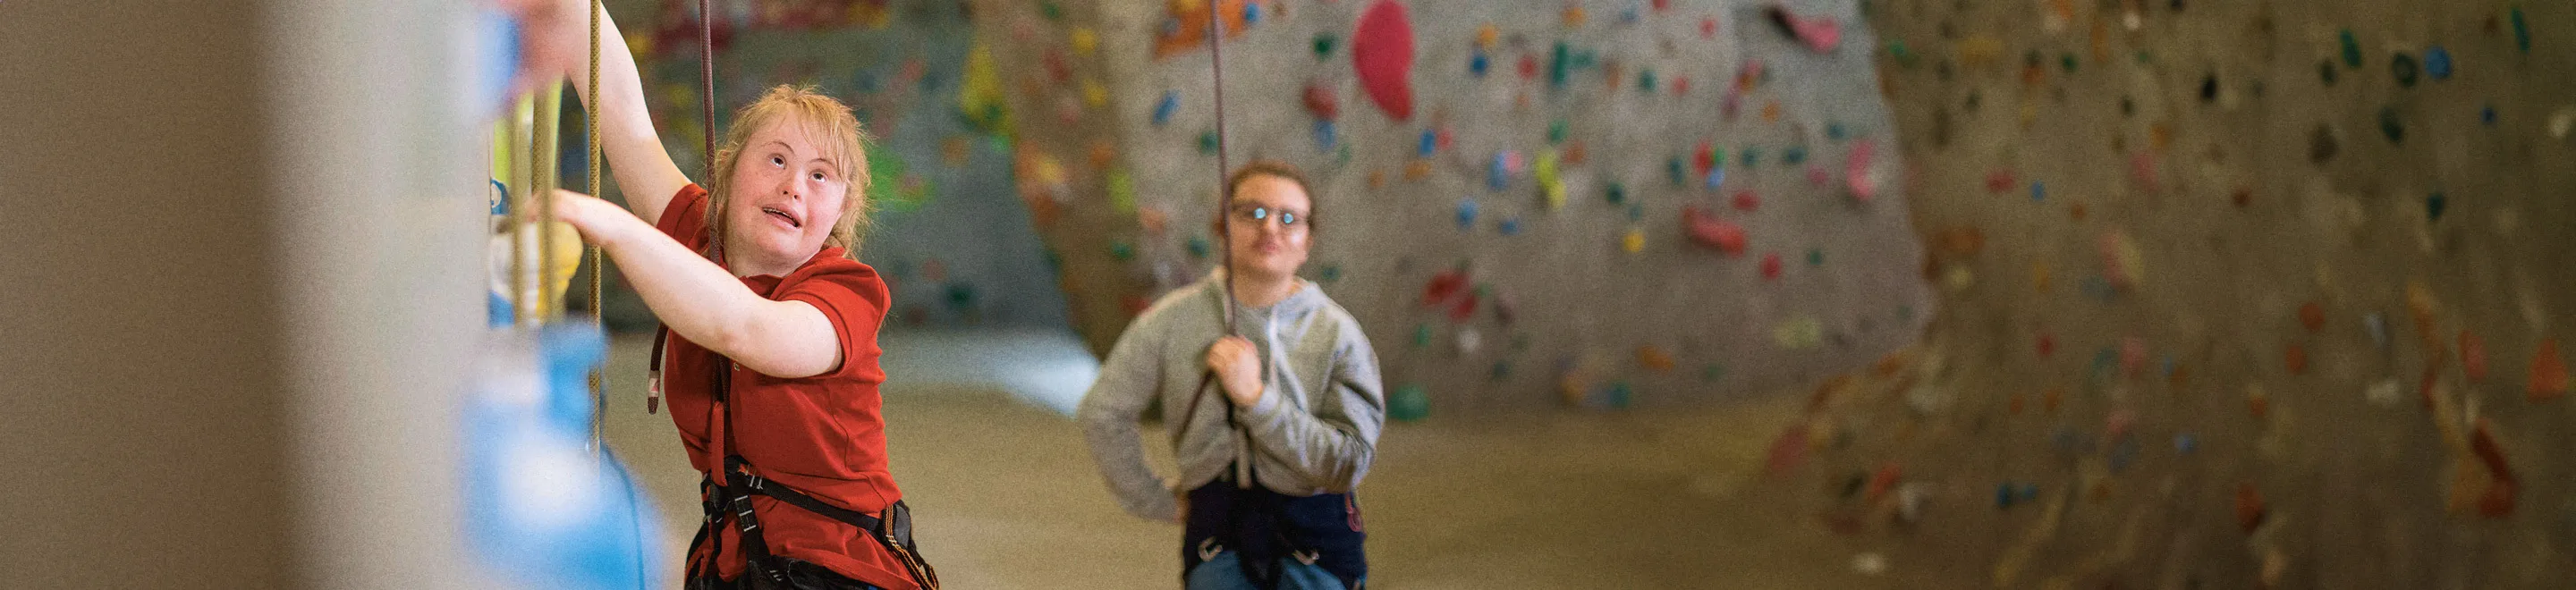 Eine junge Frau mit dem Down-Syndrom beim Klettern in der Kletterhalle.